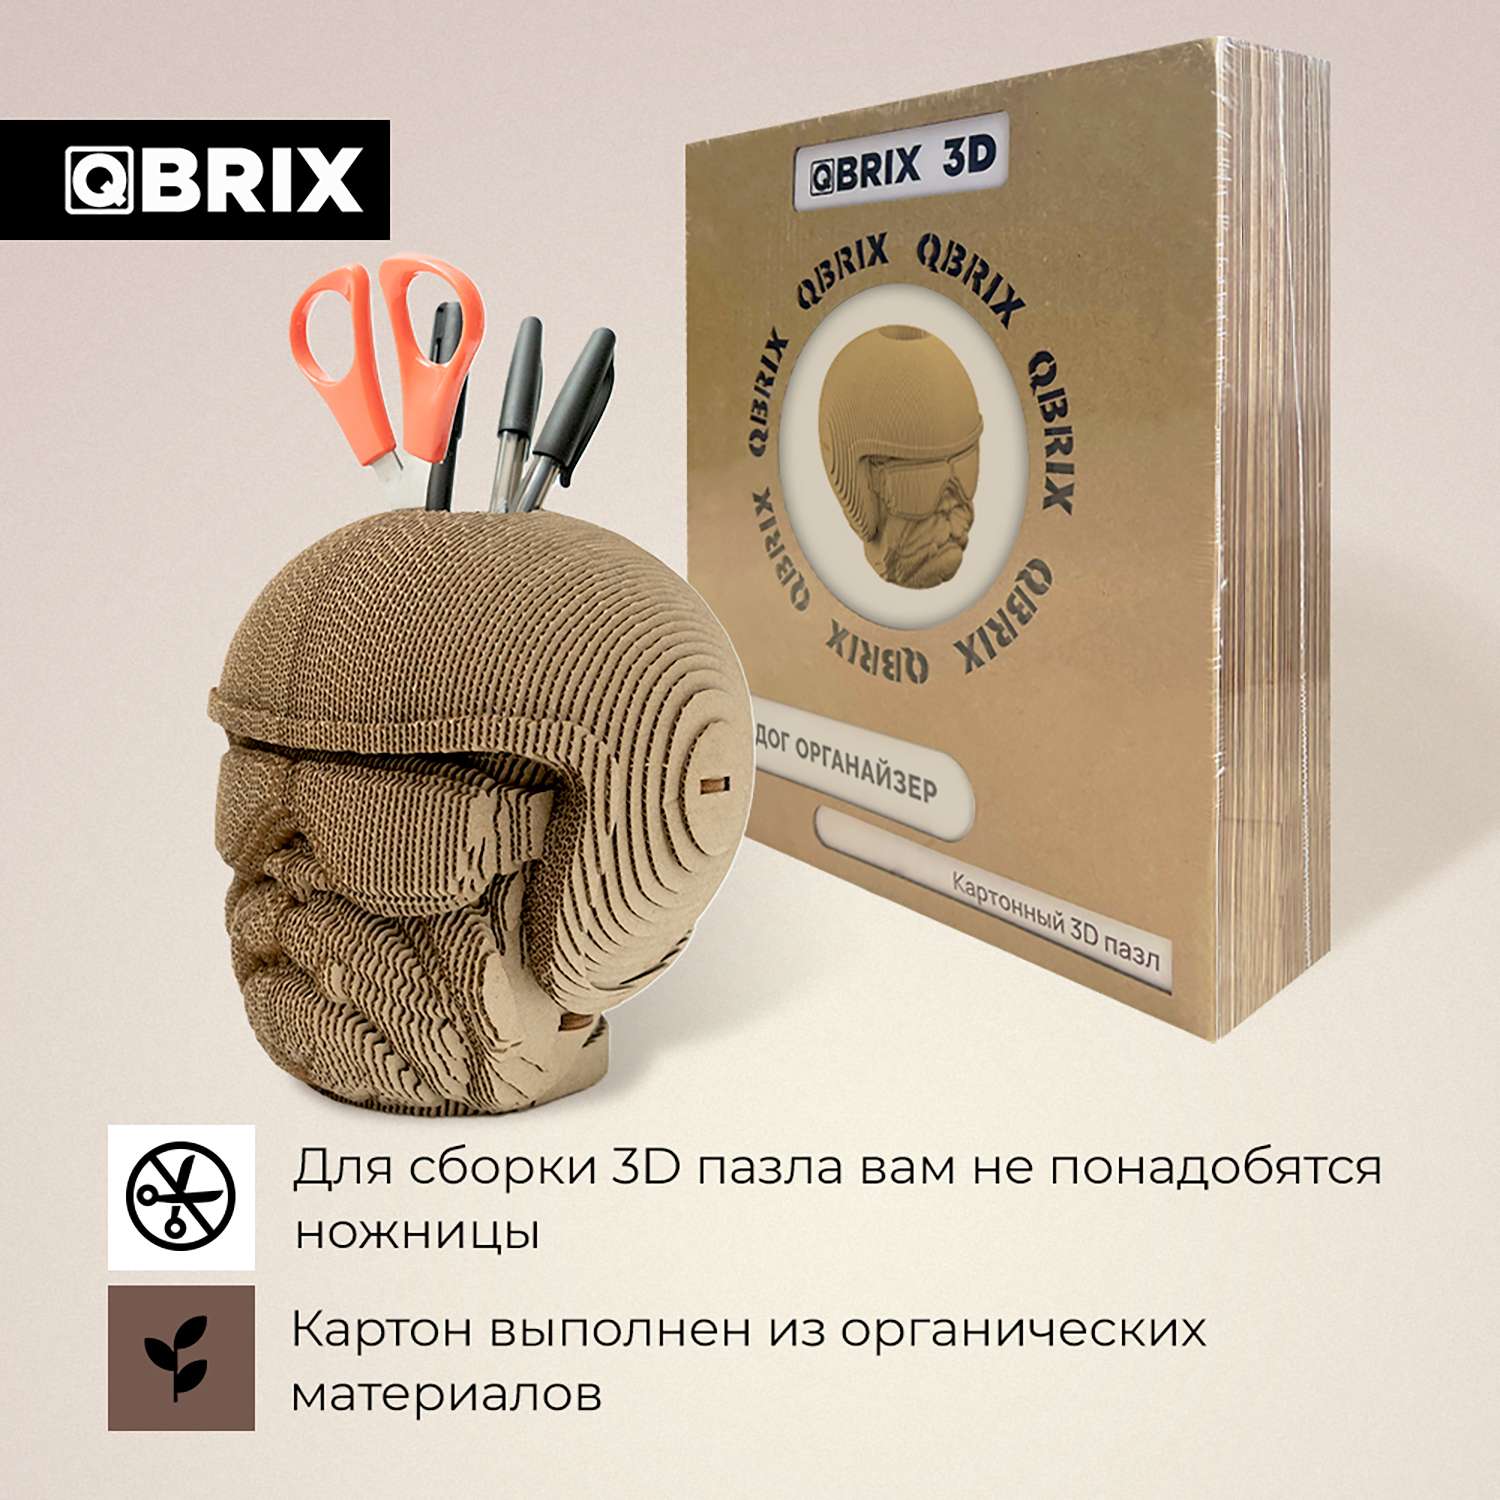 Конструктор QBRIX 3D картонный Бульдог Органайзер 20005 20005 - фото 3